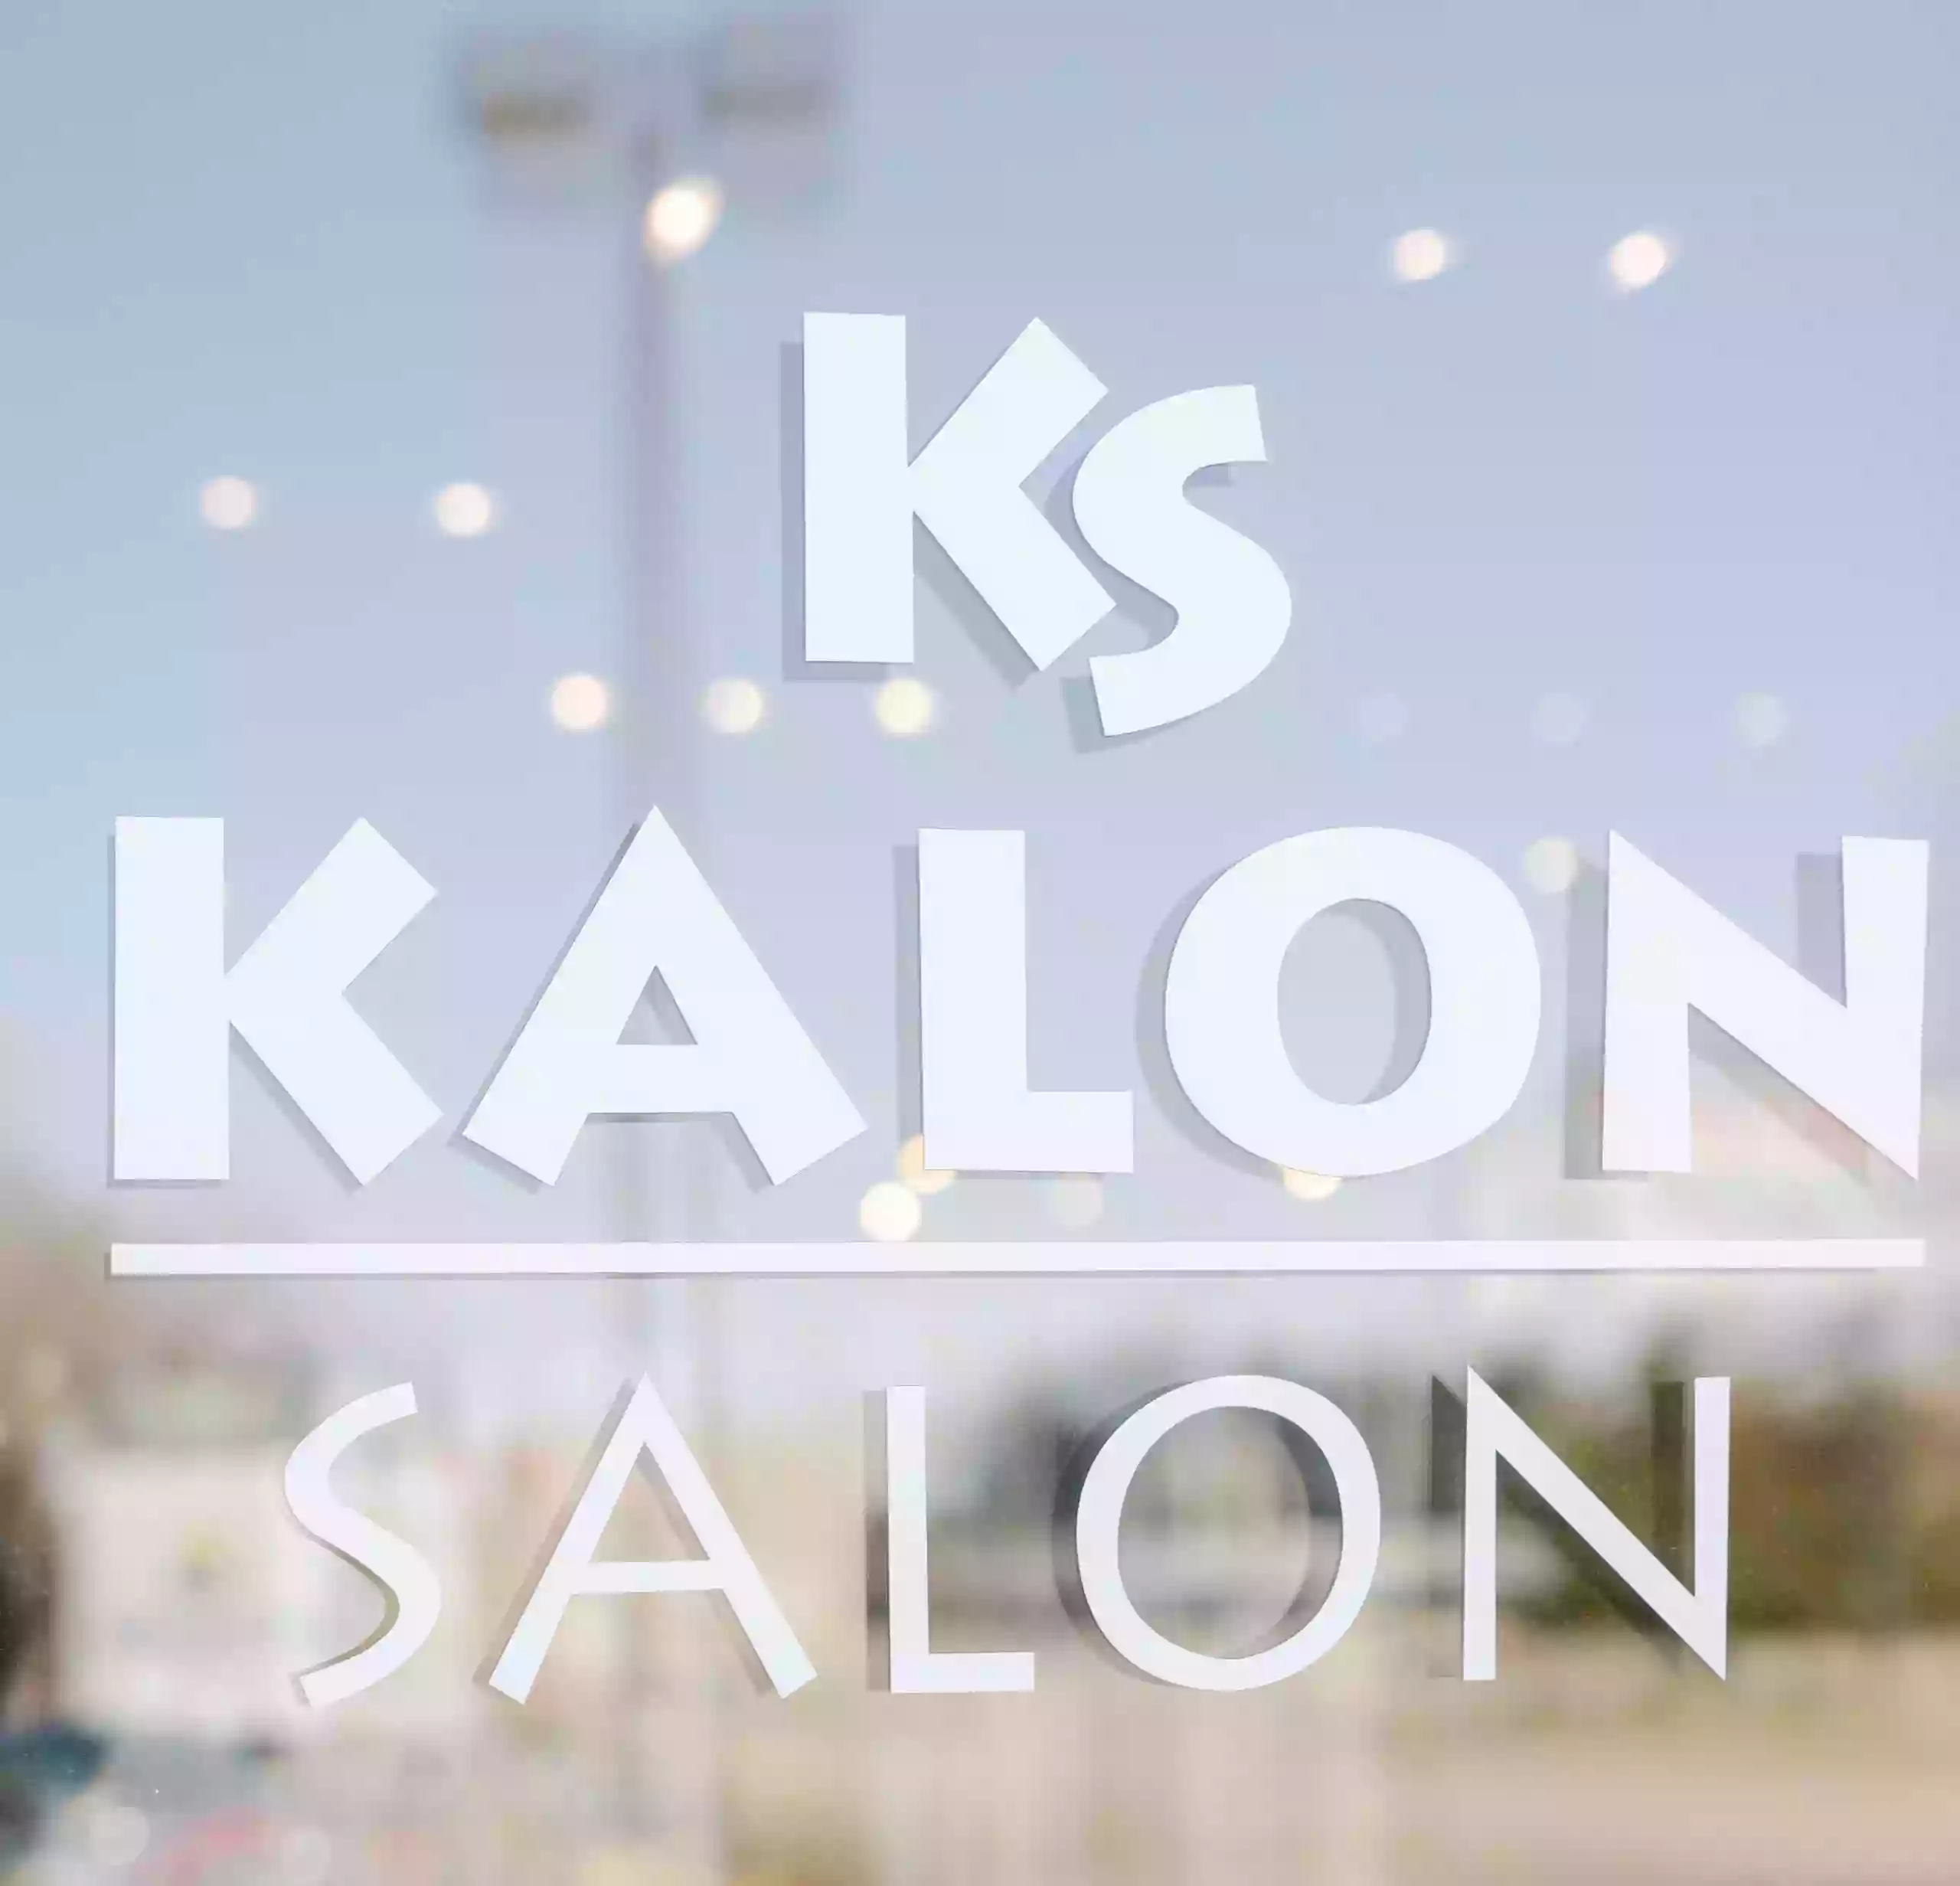 Kalon Salon